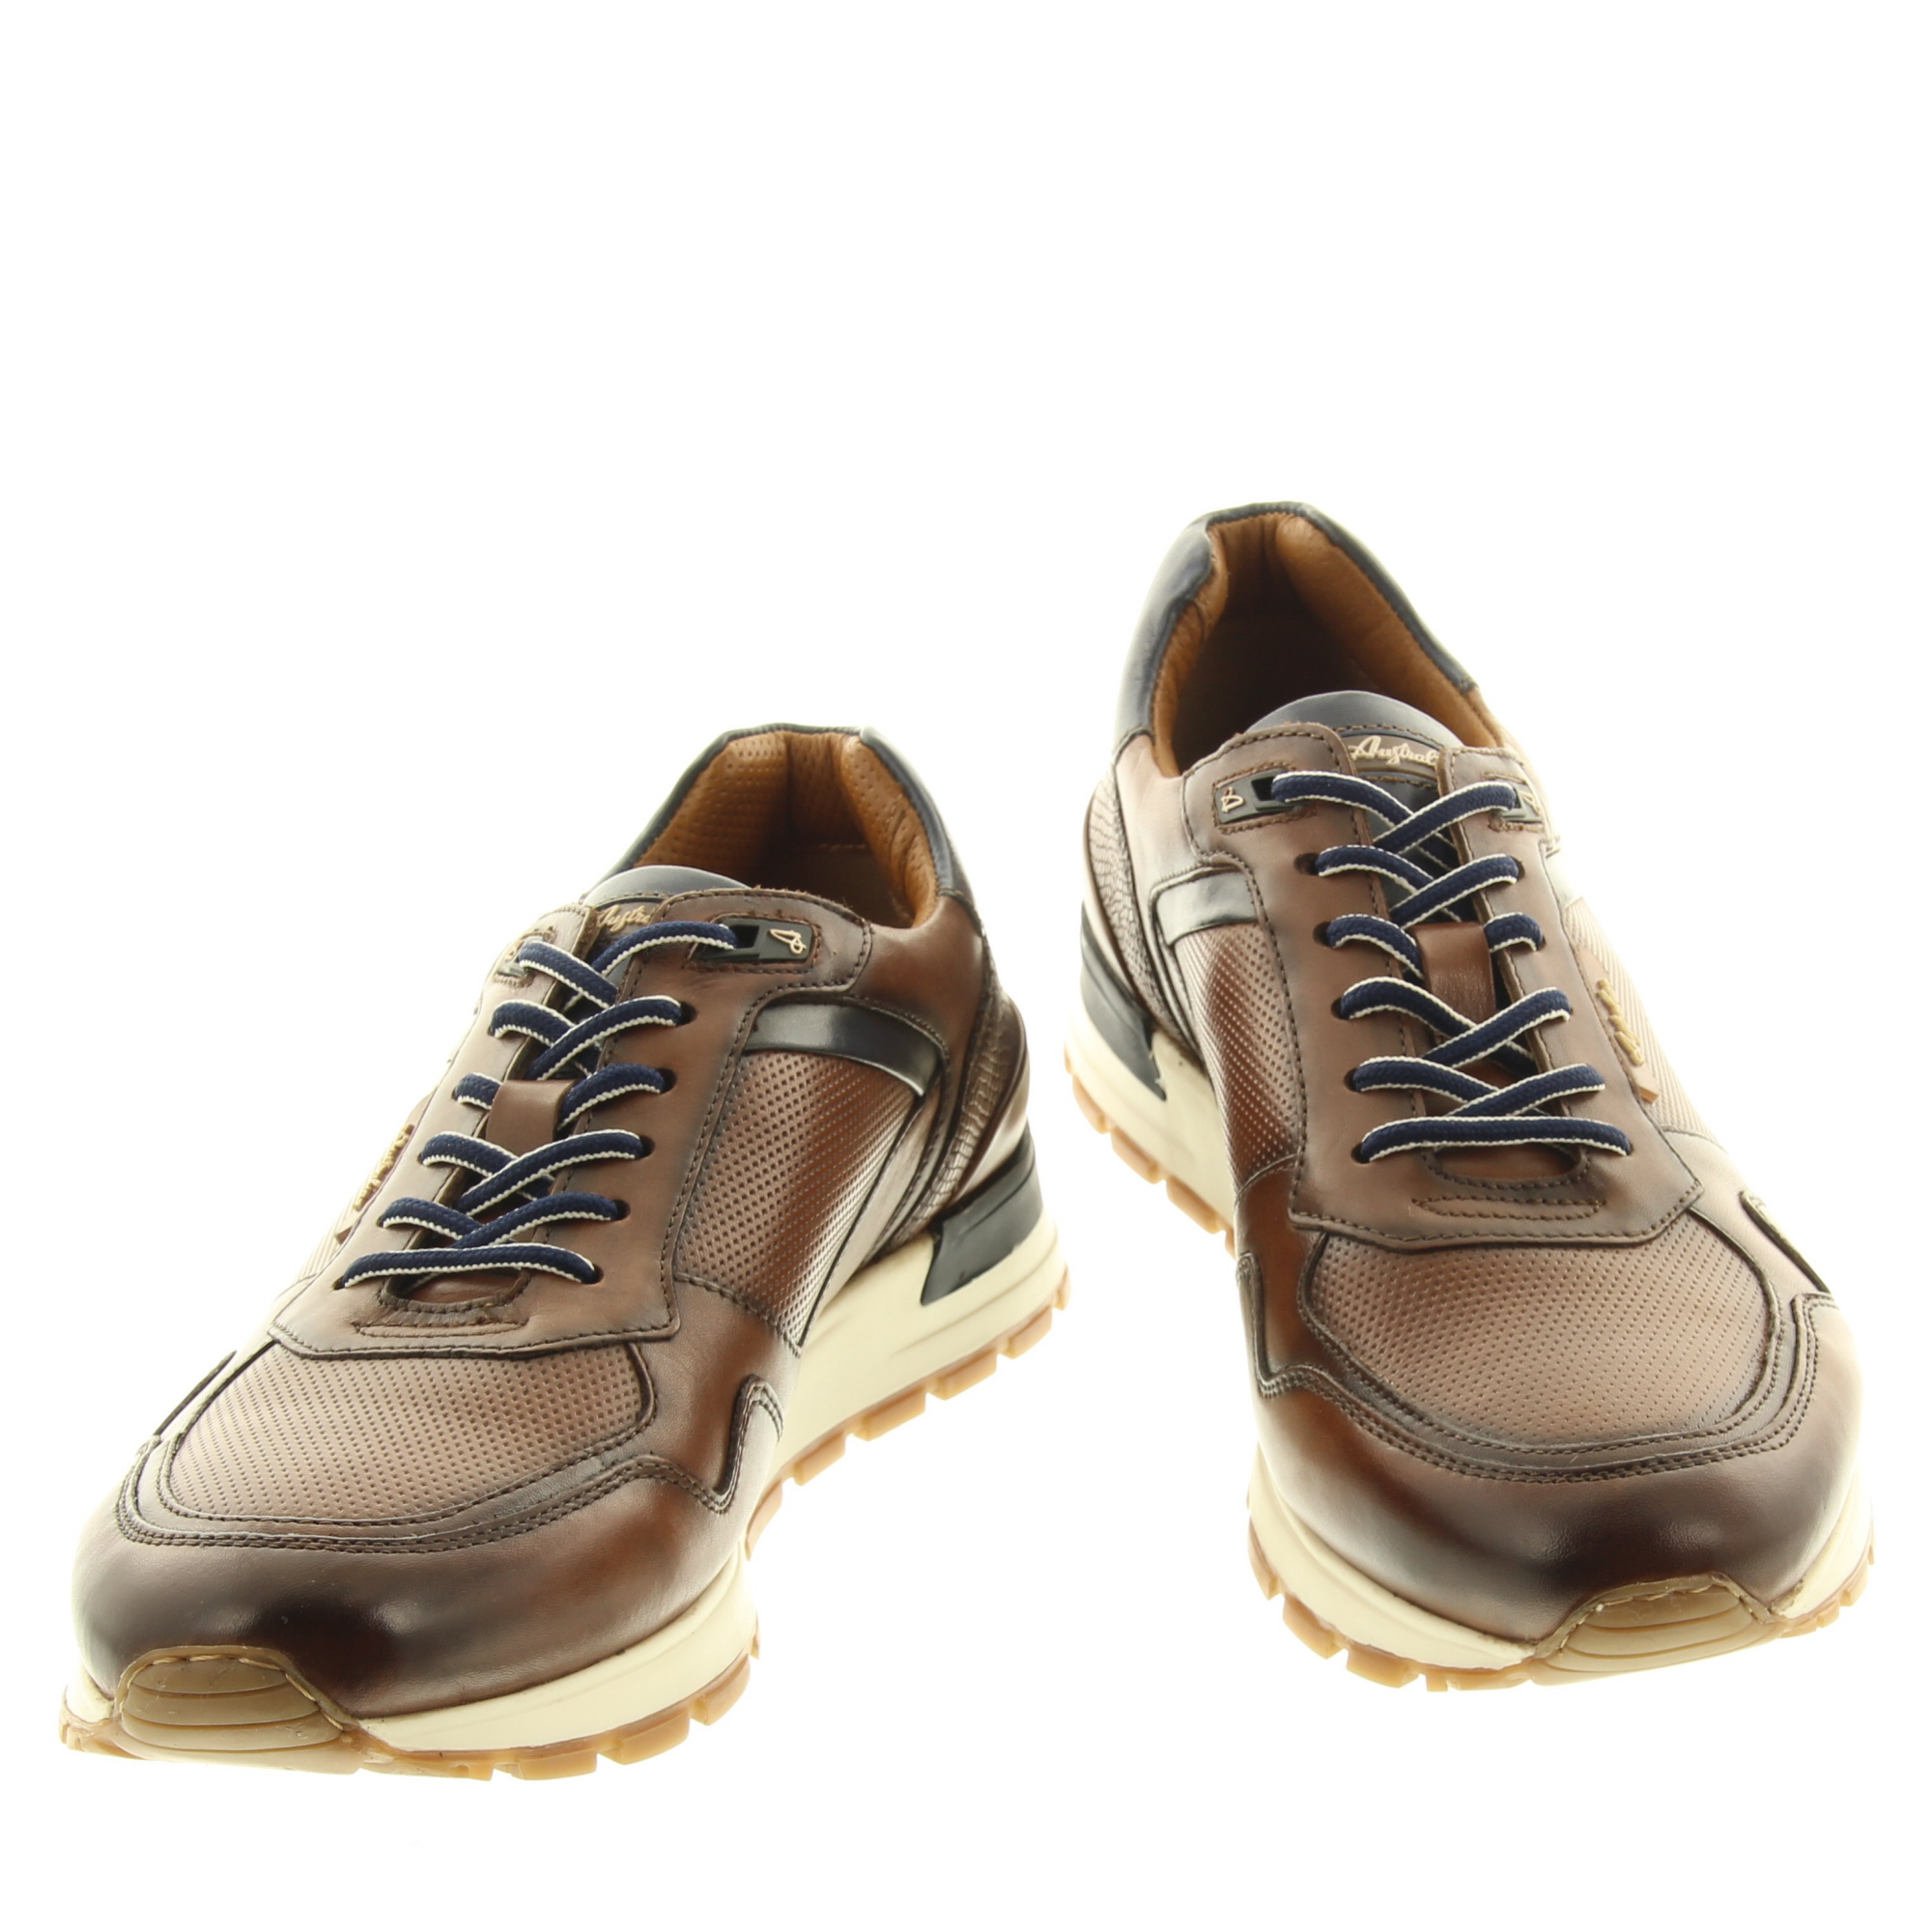 Australian Footwear Novecento 15.1632.02 T30 Tan-Blue-White